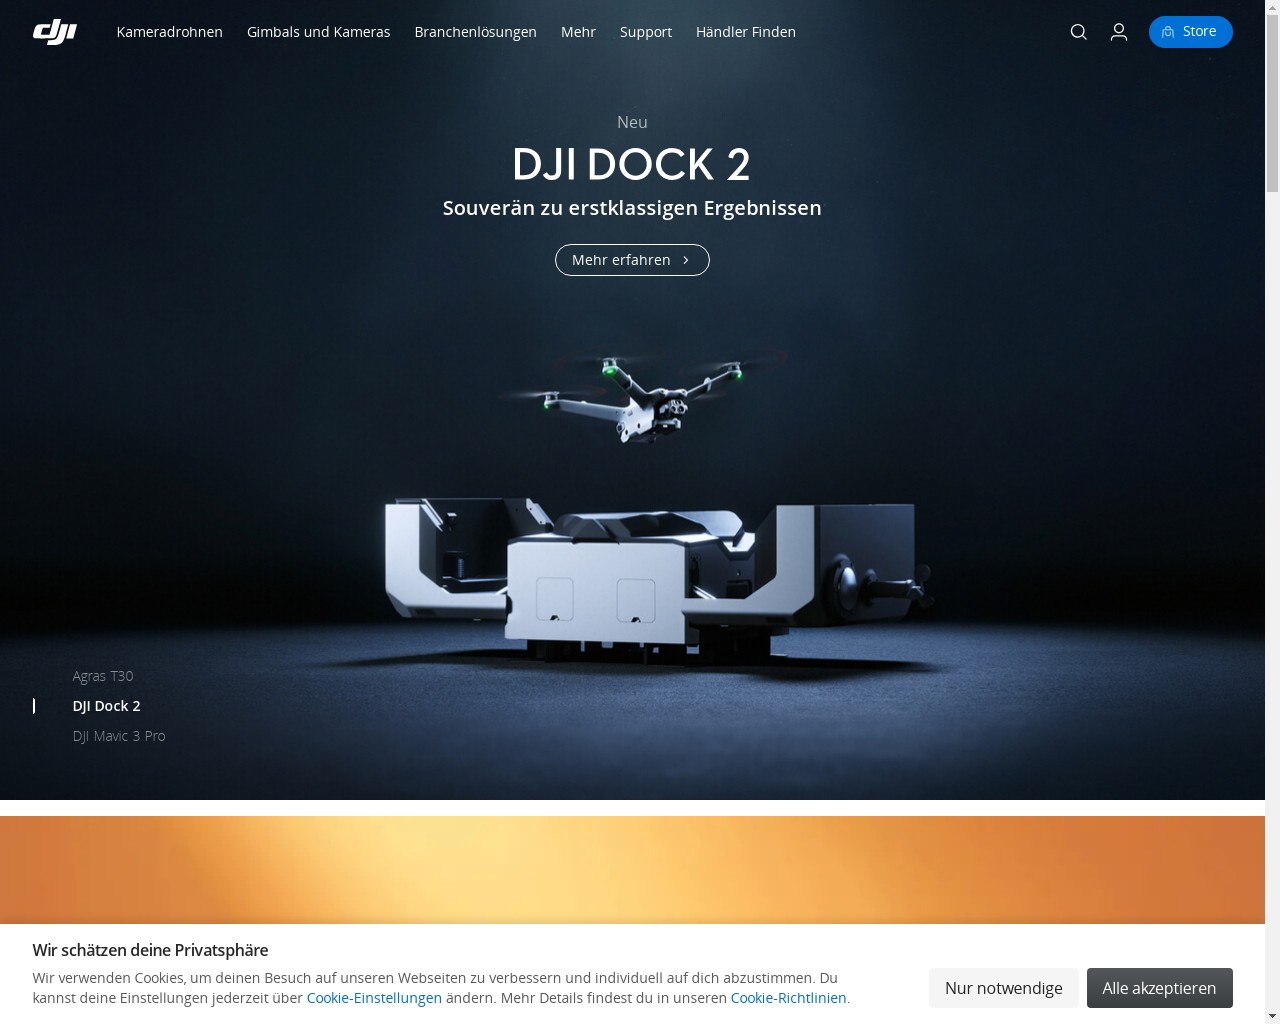 Картинка скриншота сайта - DJI – компания, которая является одним из ведущих производителей дронов в мире